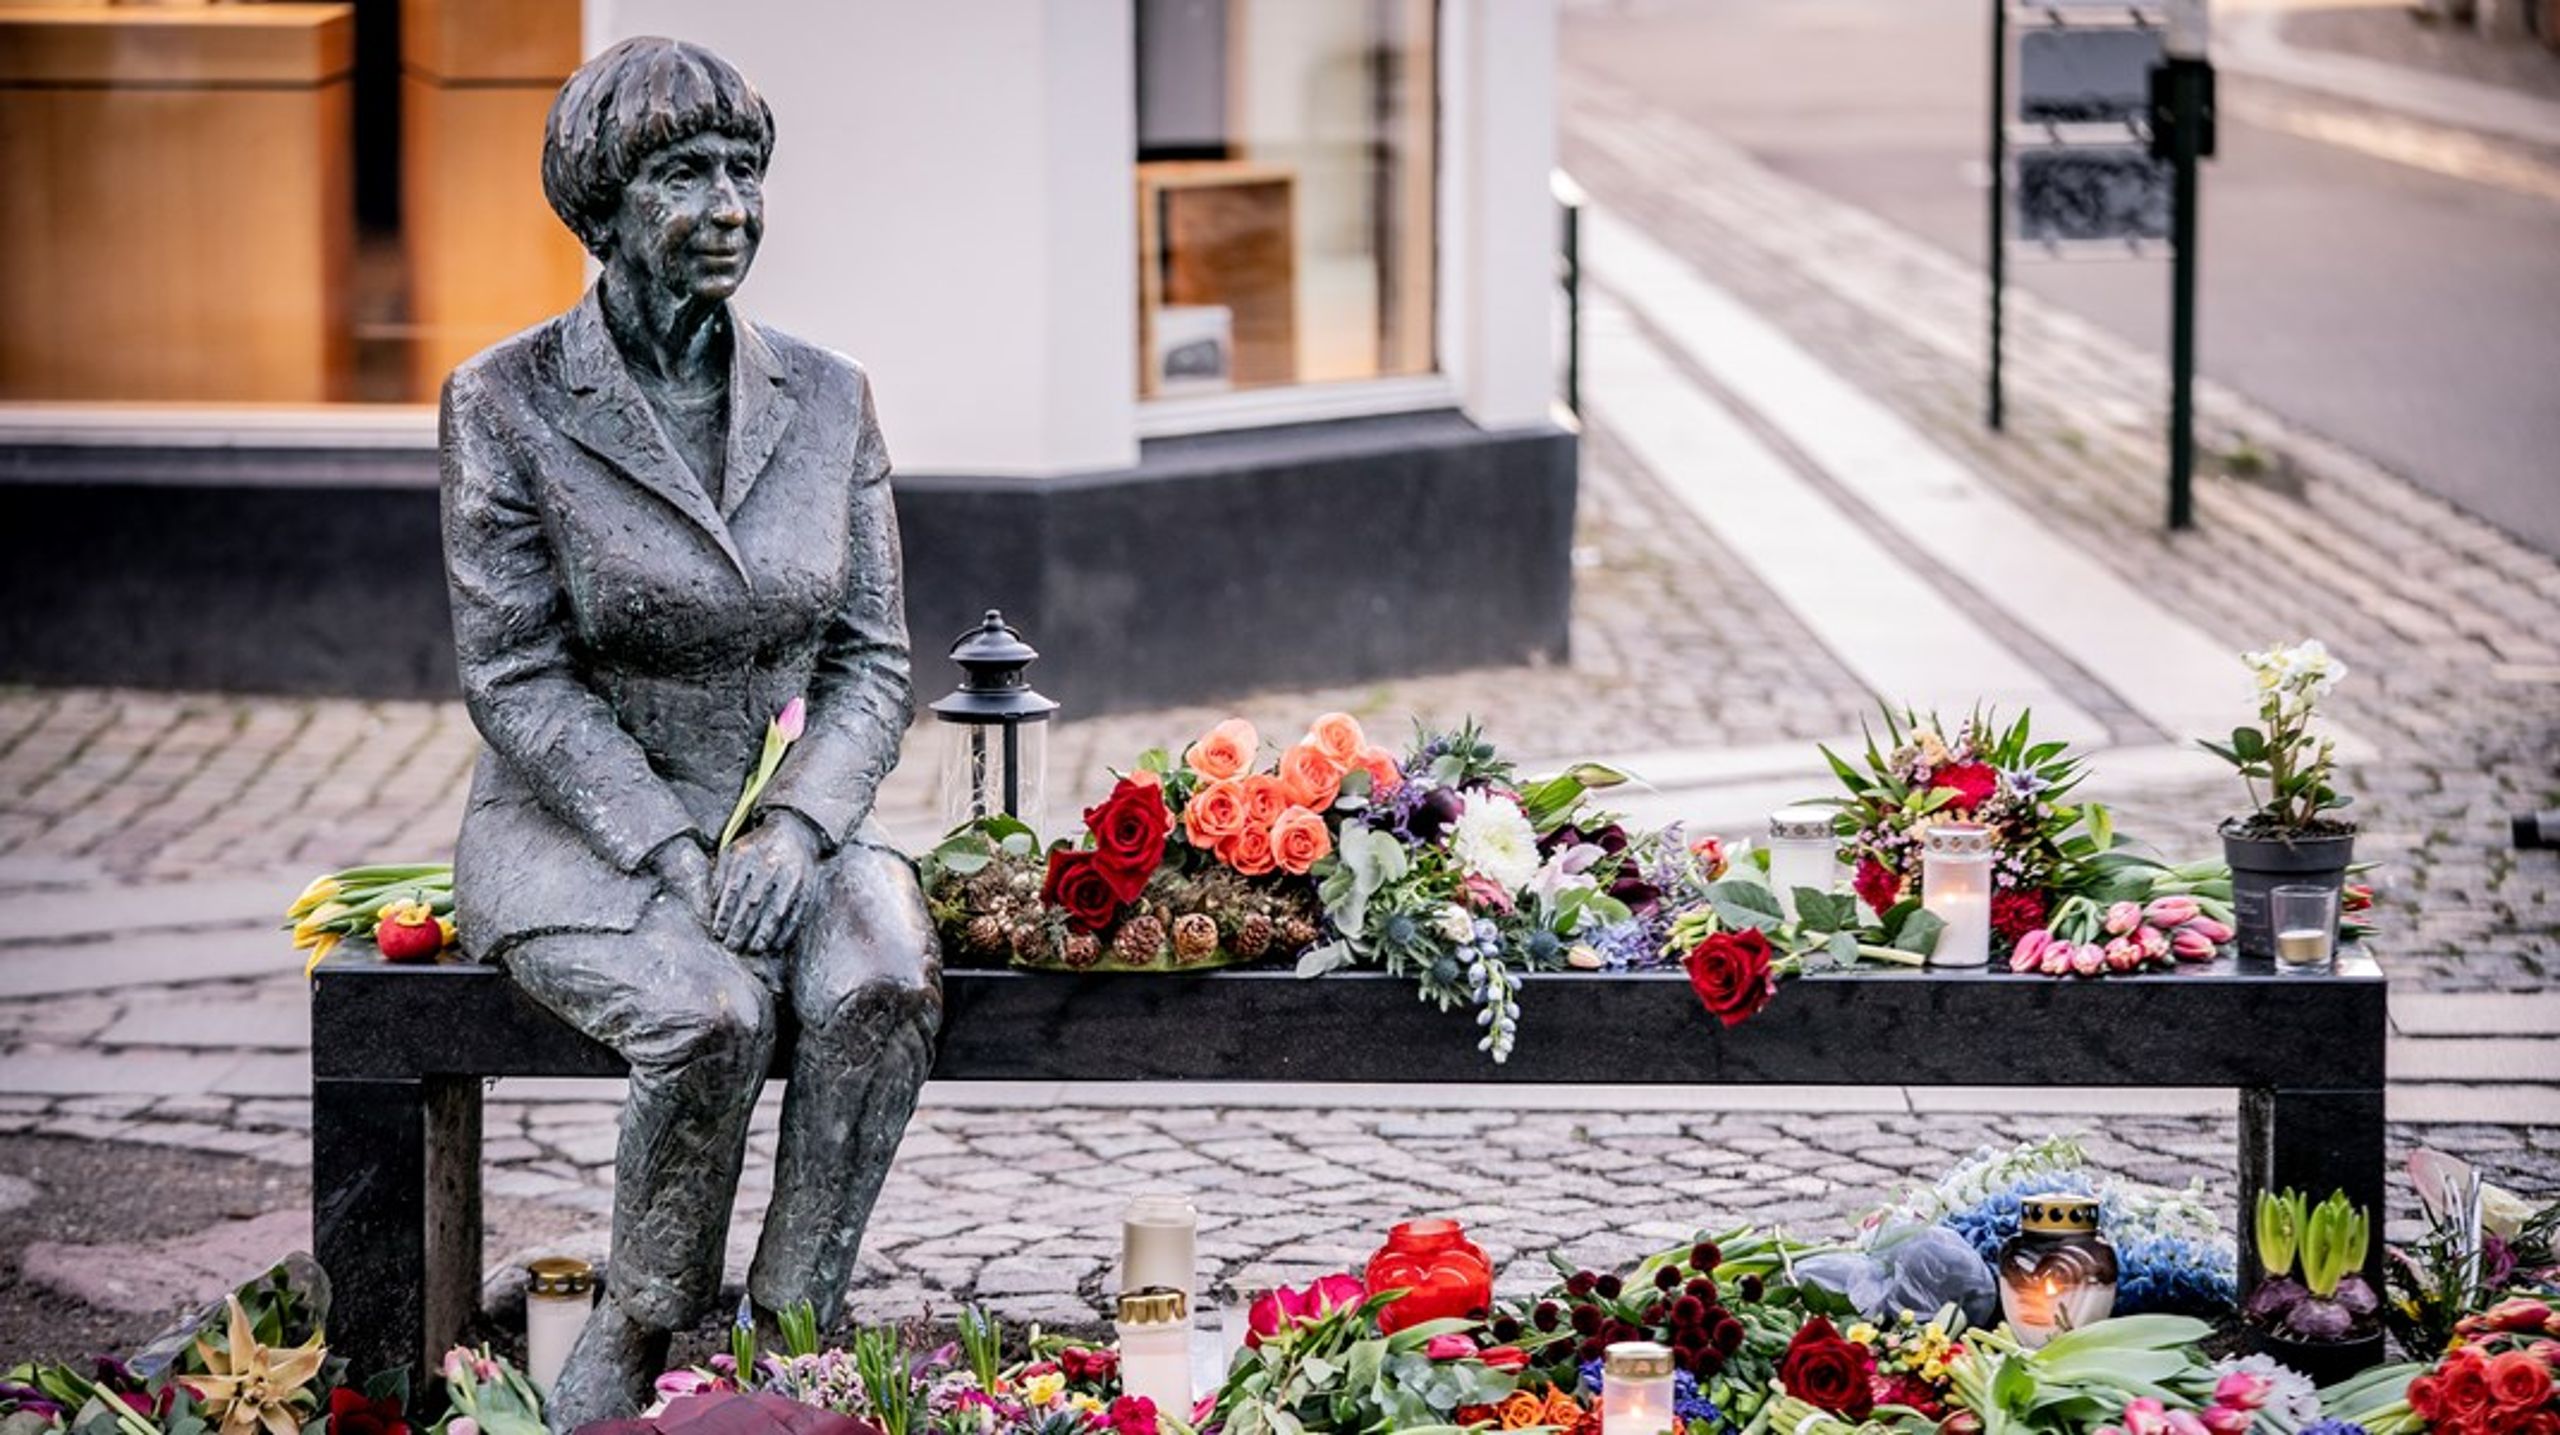 Statuen af&nbsp;Lise Nørgaard i Roskilde er en af de få danske statuer af kvinder.